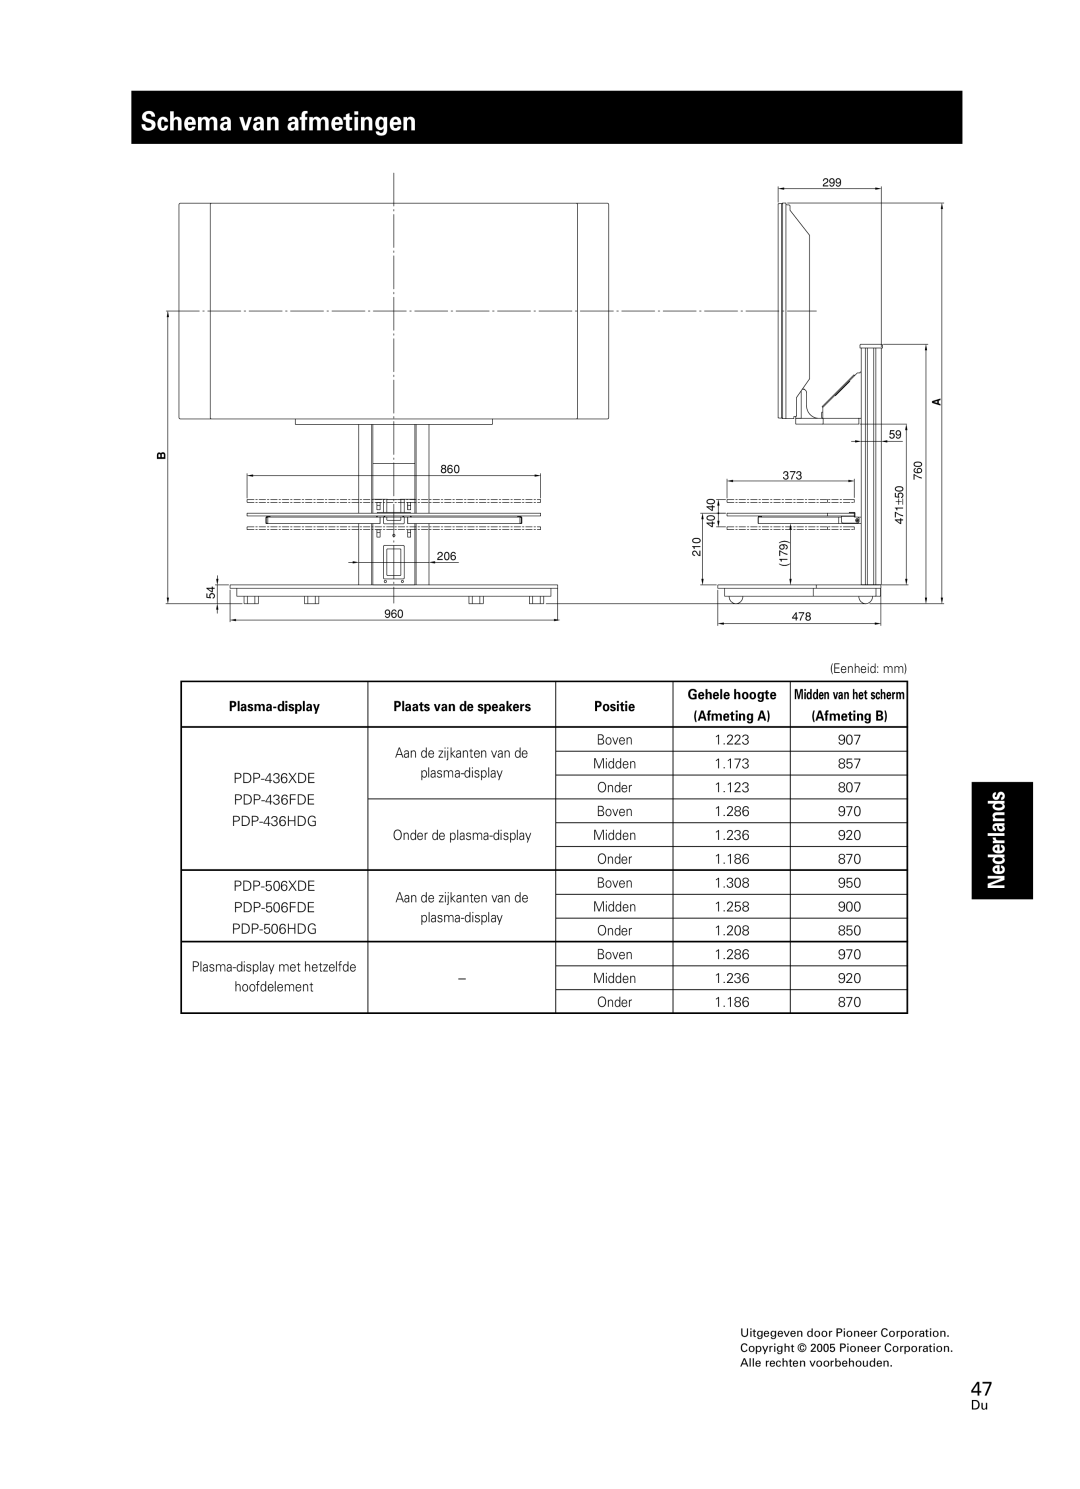 Pioneer PDK-FS05 manual Schema van afmetingen, Nederlands 